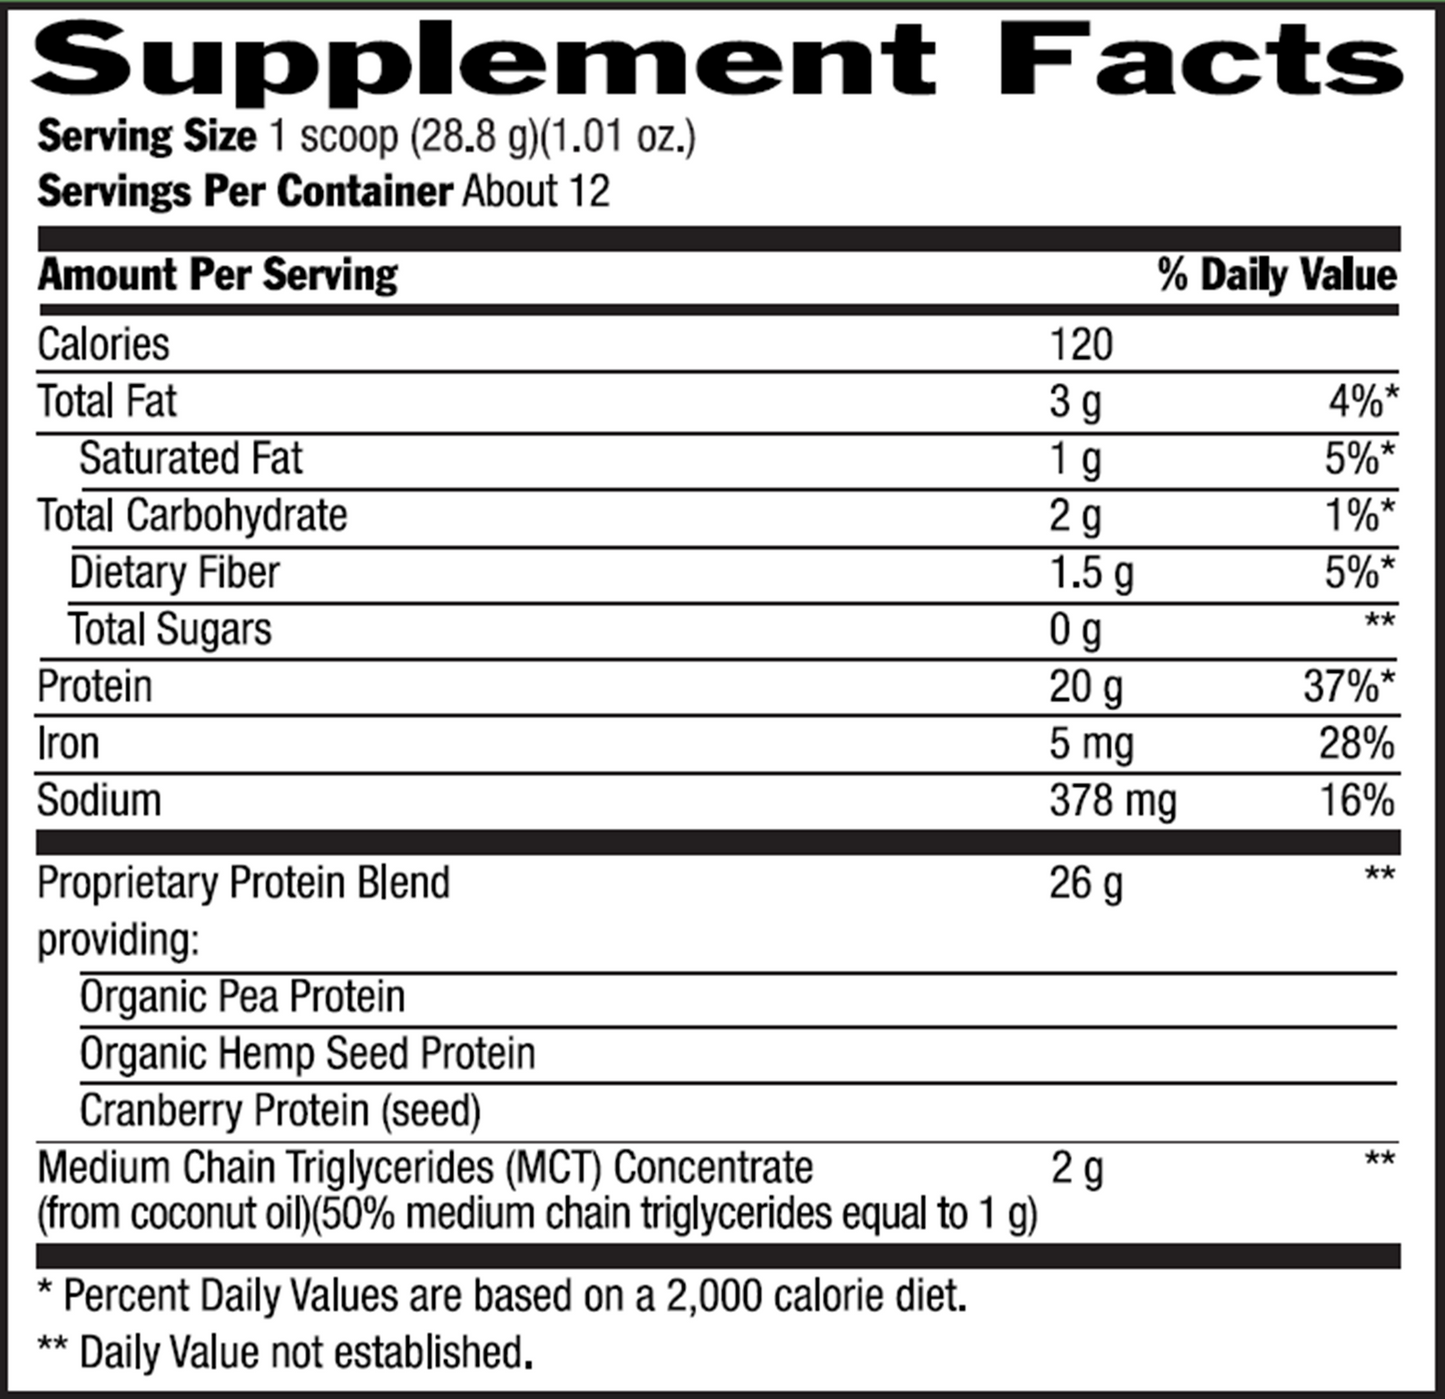 Vegan Protein Vanilla 12.2 oz